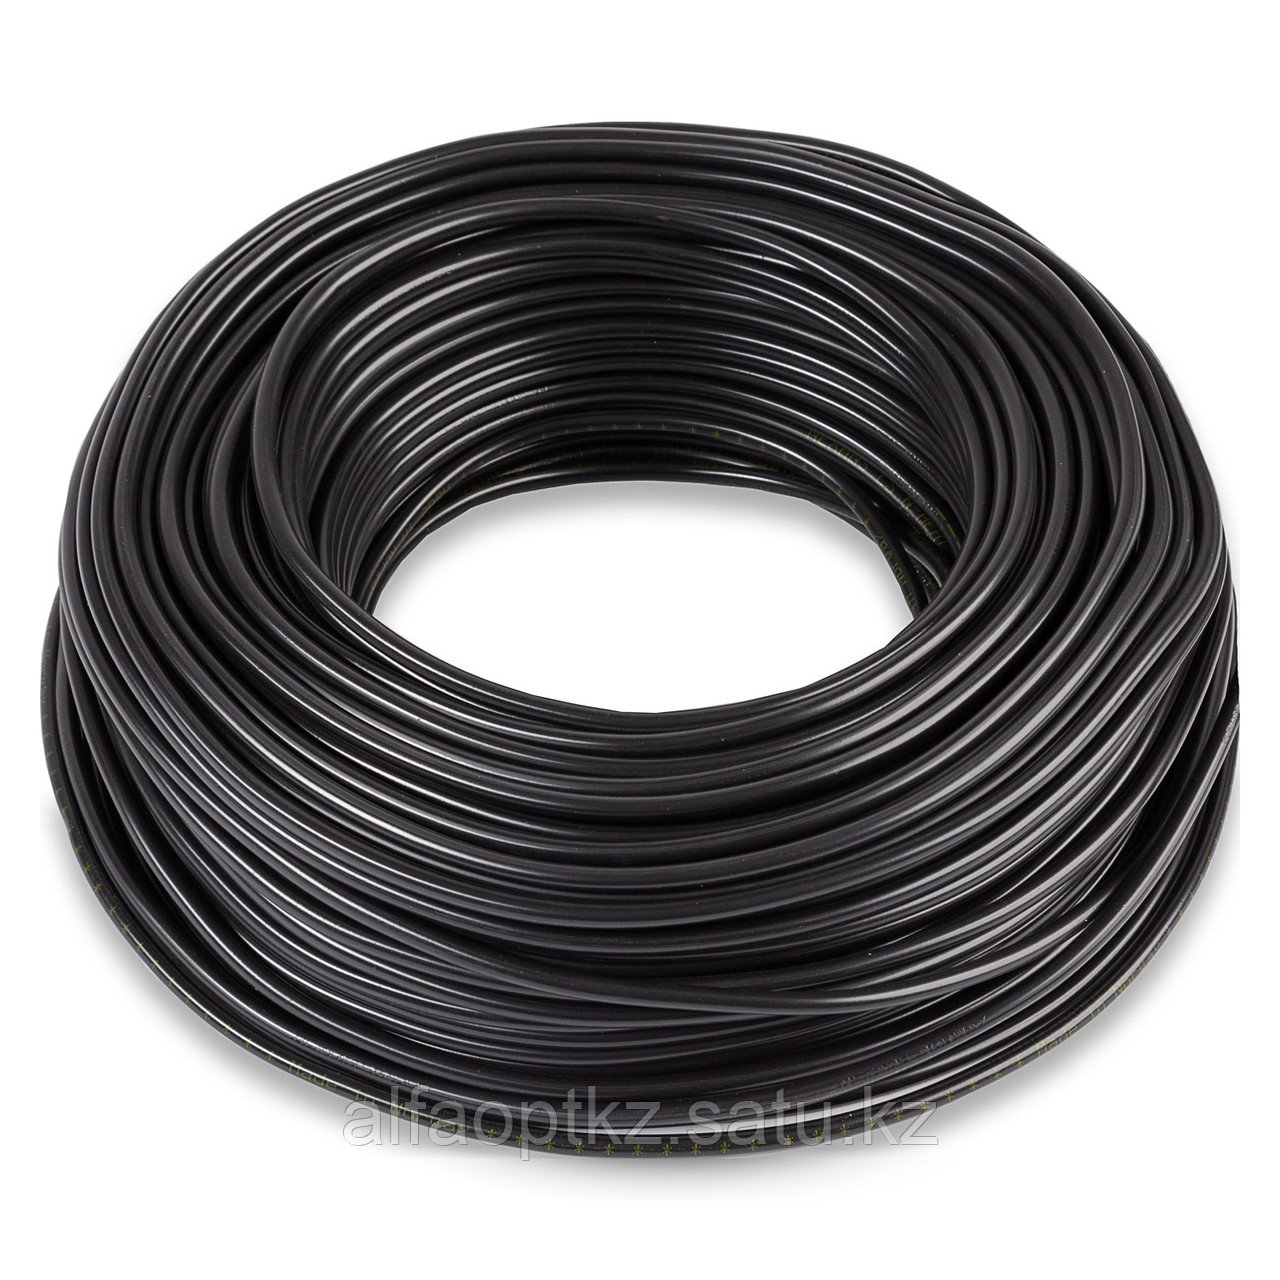 Одножильный отрезной нагревательный кабель TXLP 0,25 OHM/M (BLACK)